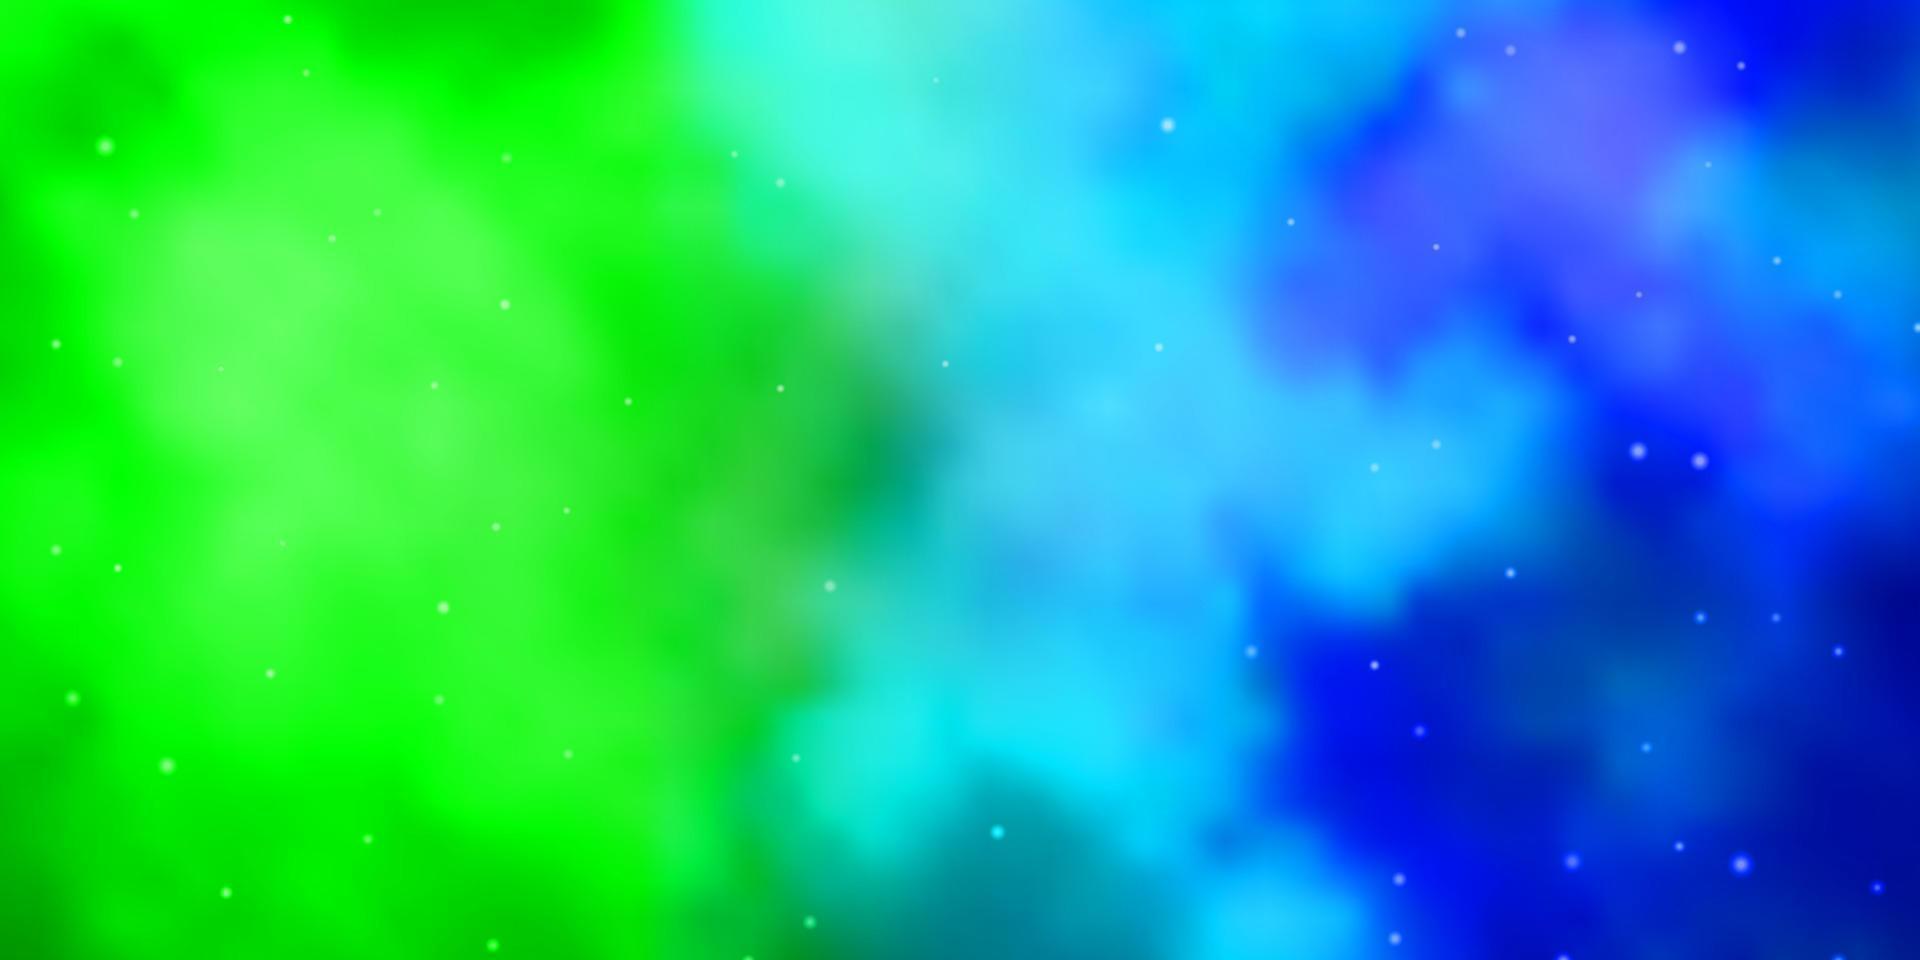 lichtblauwe, groene vectortextuur met prachtige sterren. vector